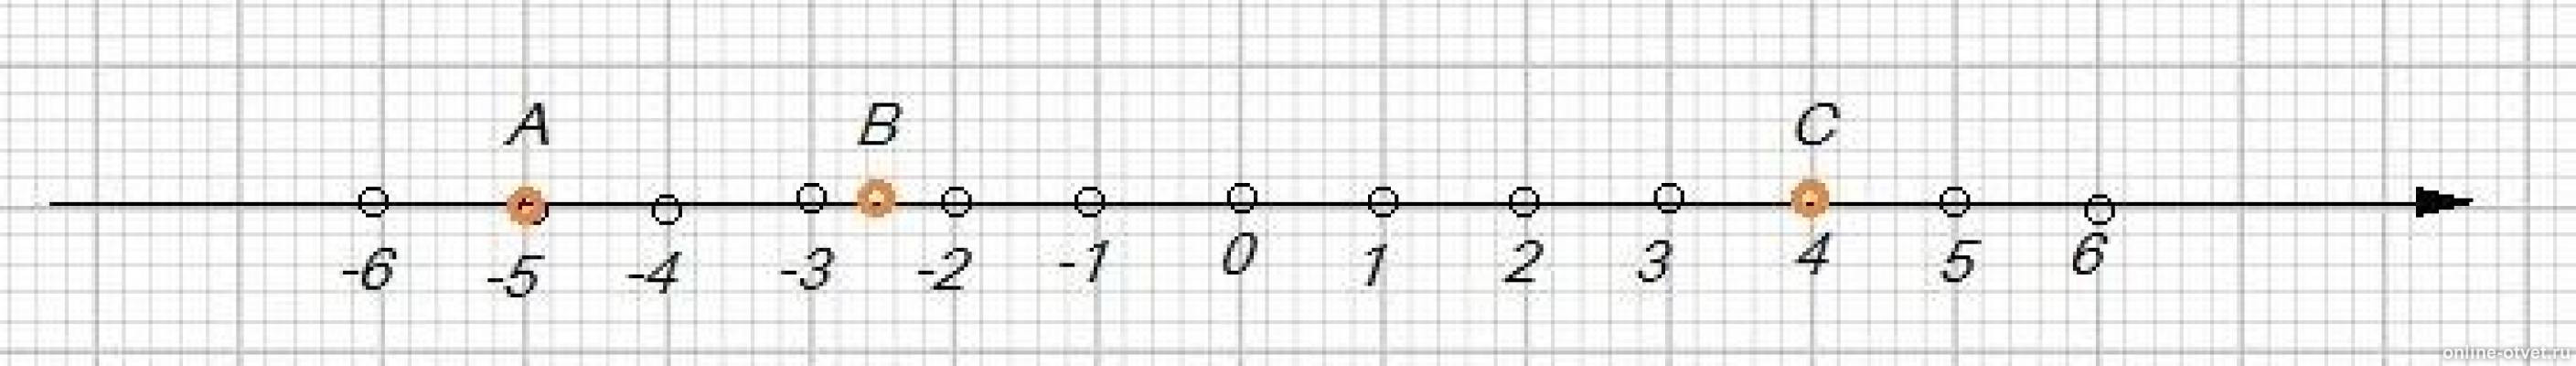 Какая точка лежит левее на координатной прямой. Изобразите на координатной прямой точки а -5 в -2.5 с 4. Изобразите на координатной прямой точки. Изобразите на координатной прямой точки а - 4. Изобразите на координатной прямой точки 1 2/5.